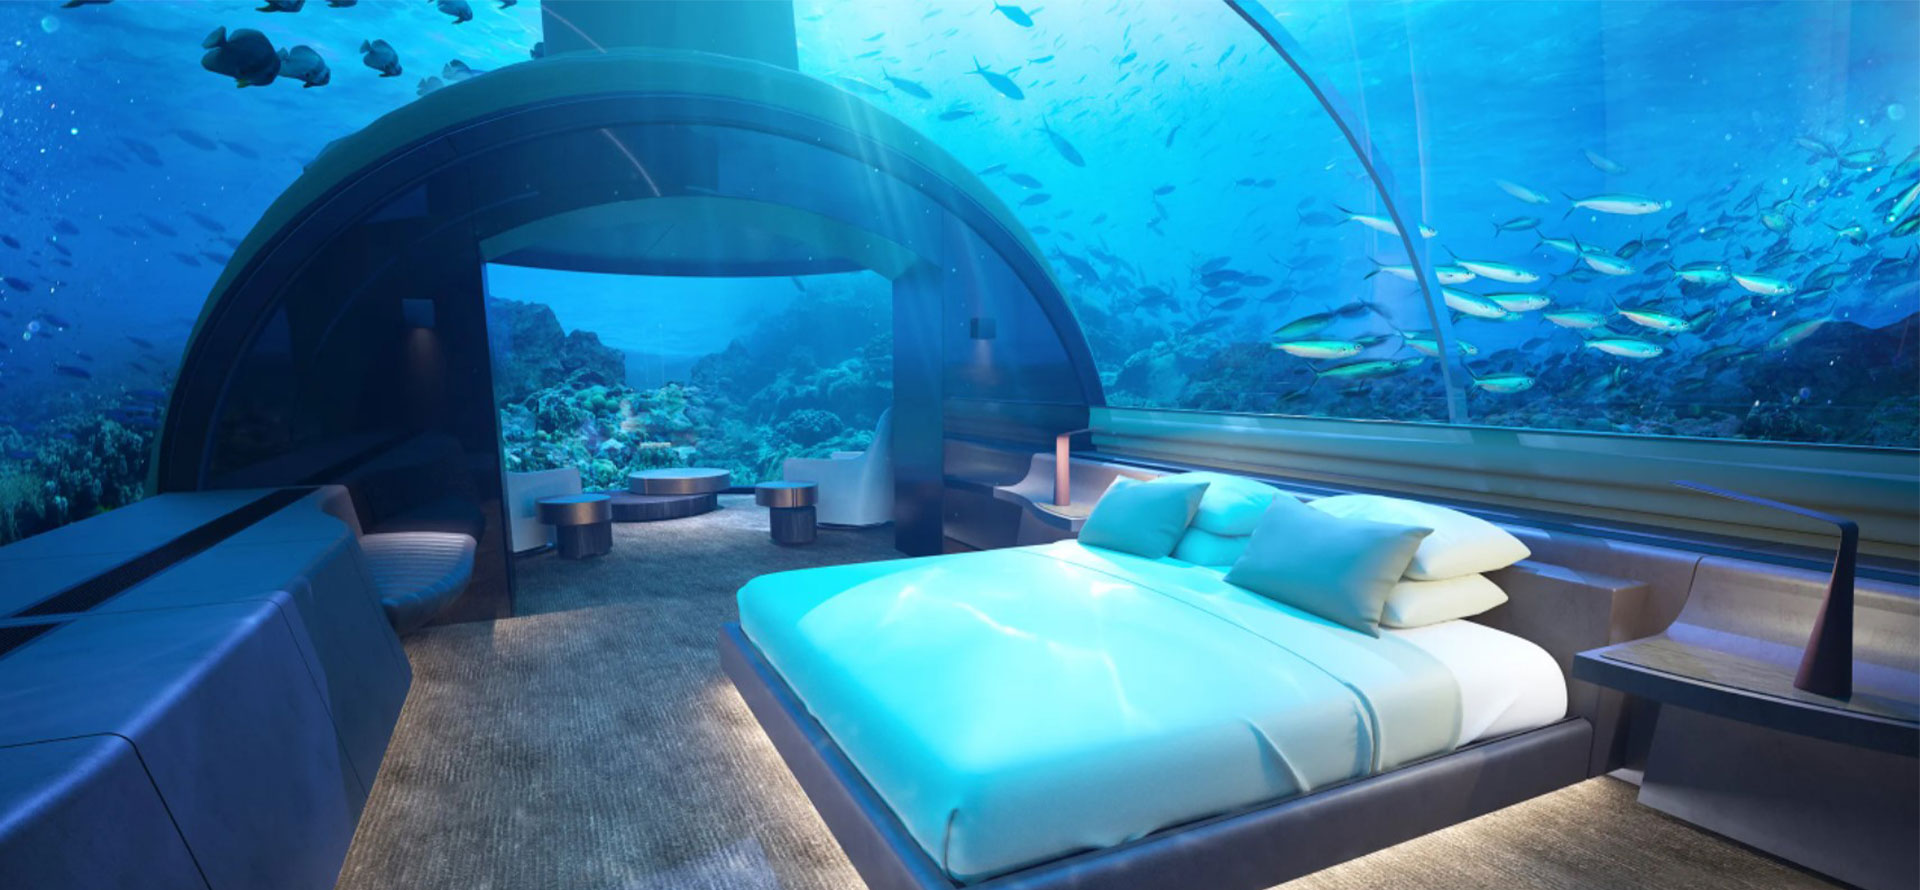 Maldives underwater hotel room.